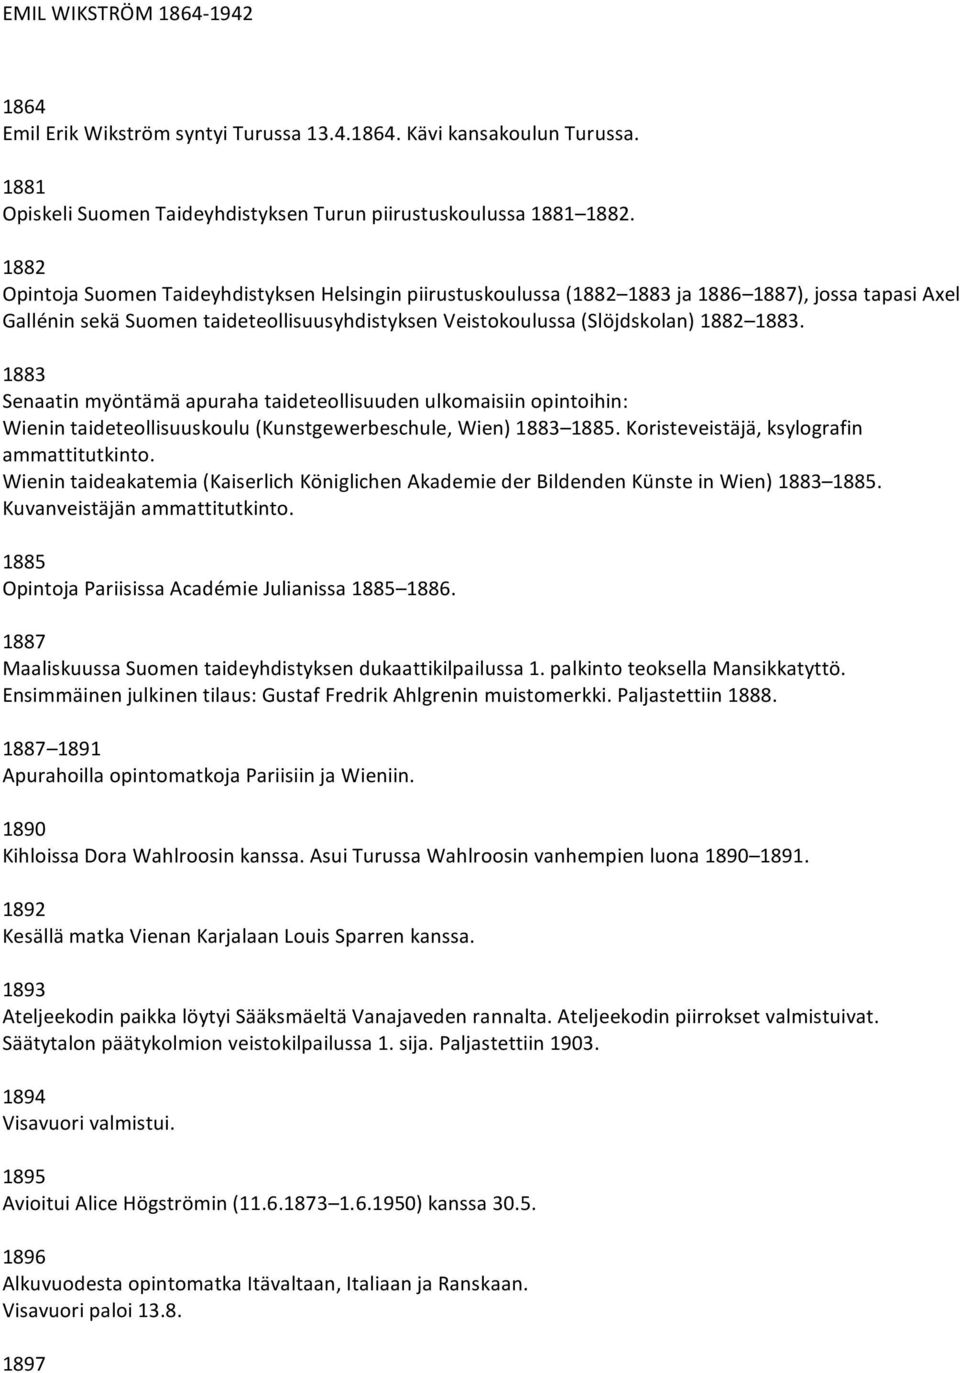 1883 Senaatinmyöntämäapurahataideteollisuudenulkomaisiinopintoihin: Wienintaideteollisuuskoulu(Kunstgewerbeschule,Wien)1883 1885.Koristeveistäjä,ksylografin ammattitutkinto.